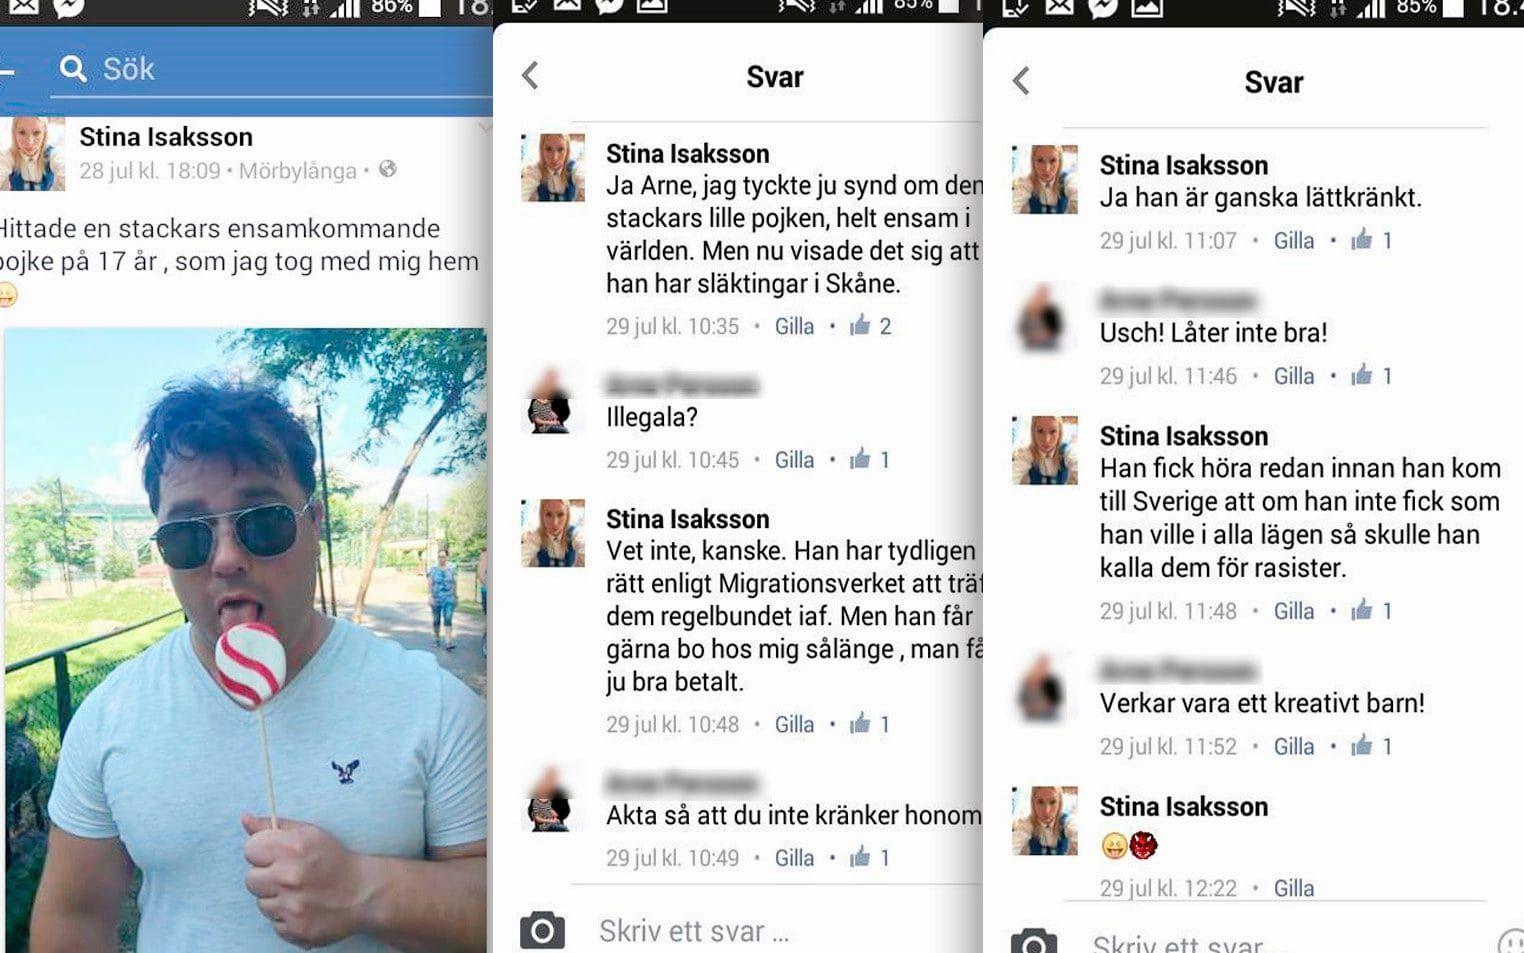 Inlägget där Stina Isaksson använder ett foto av sin make för att raljera över flyktingbarn.